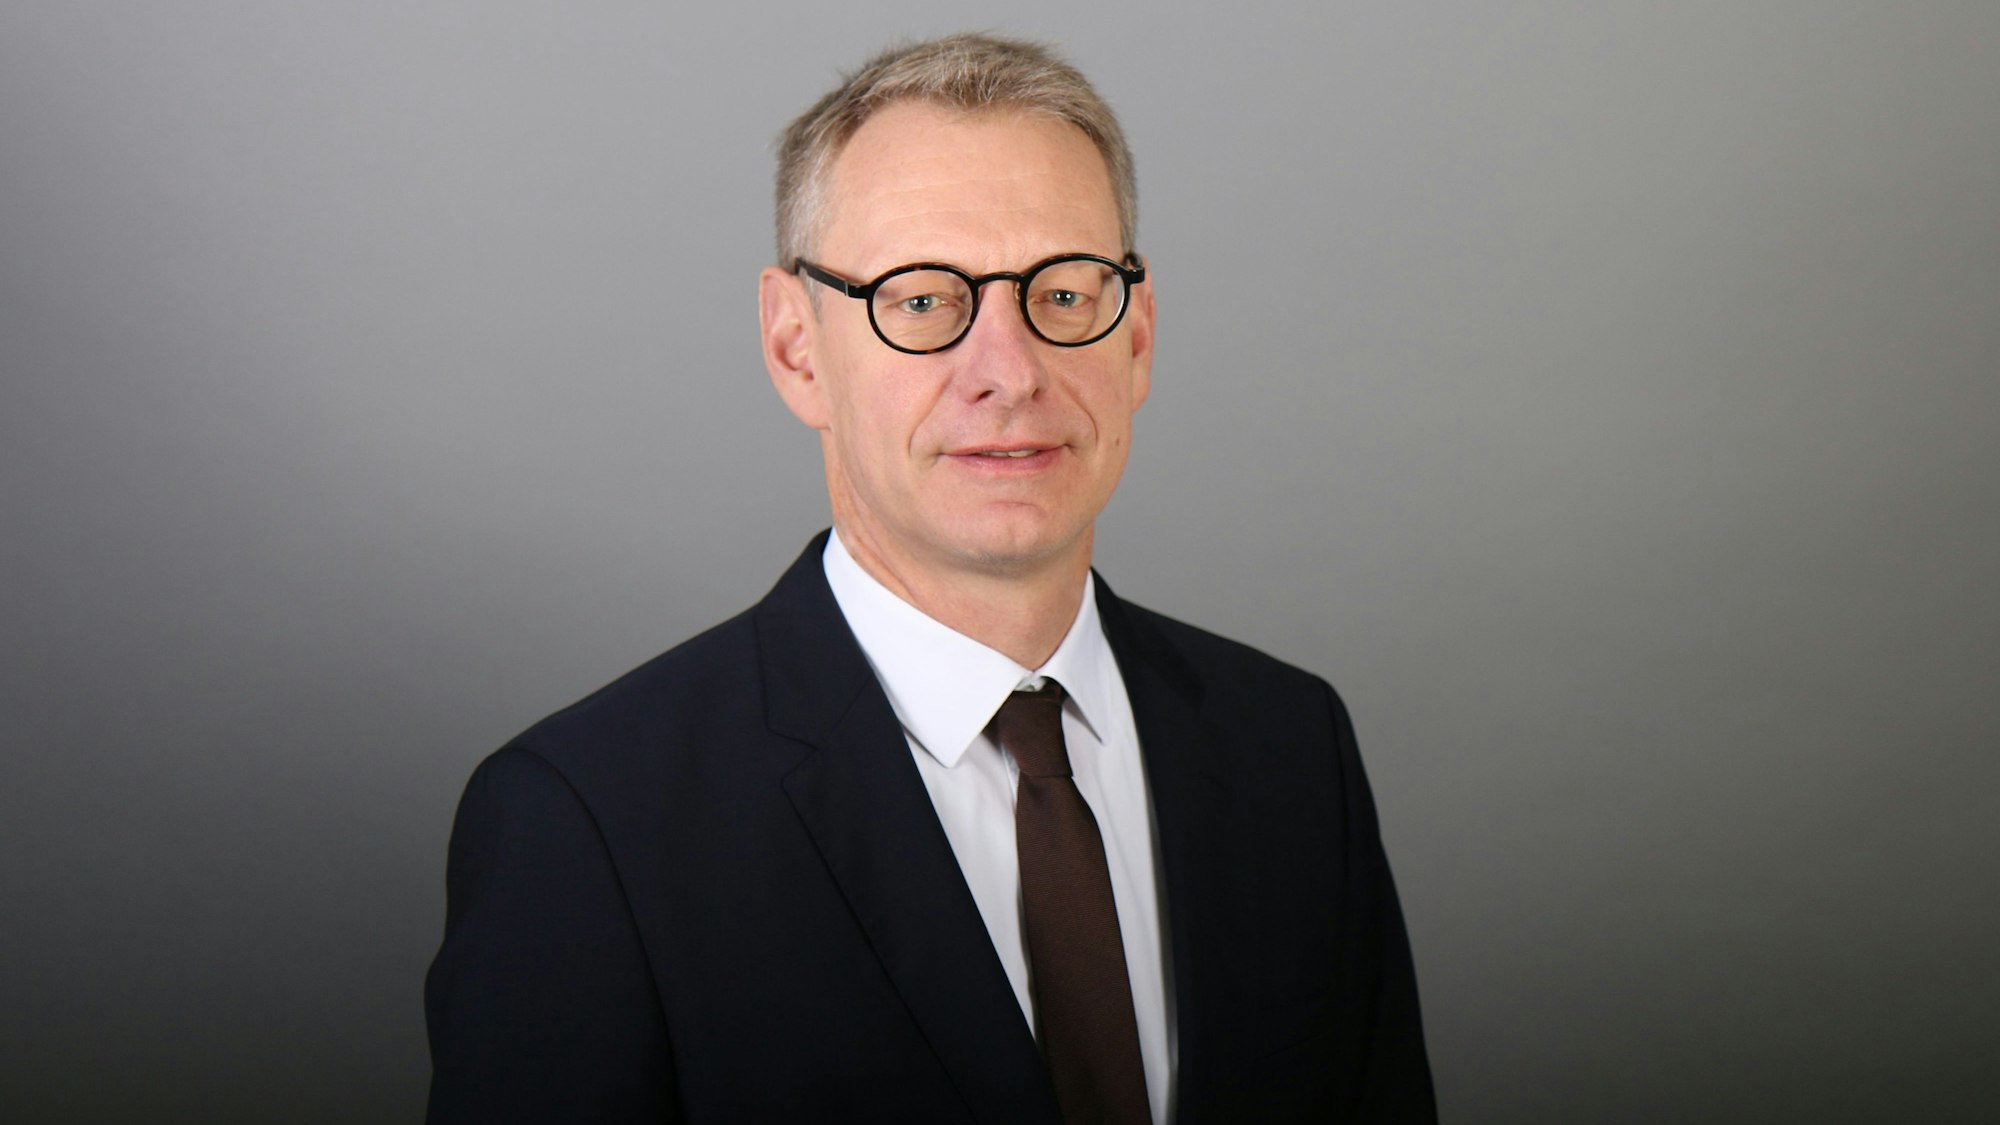 Christoph Breuer, Professor der Deutschen Sporthochschule Köln (DSHS), ist im Porträt zu sehen. Er trägt einen schwarzen Anzug und dunkle Krawatte.